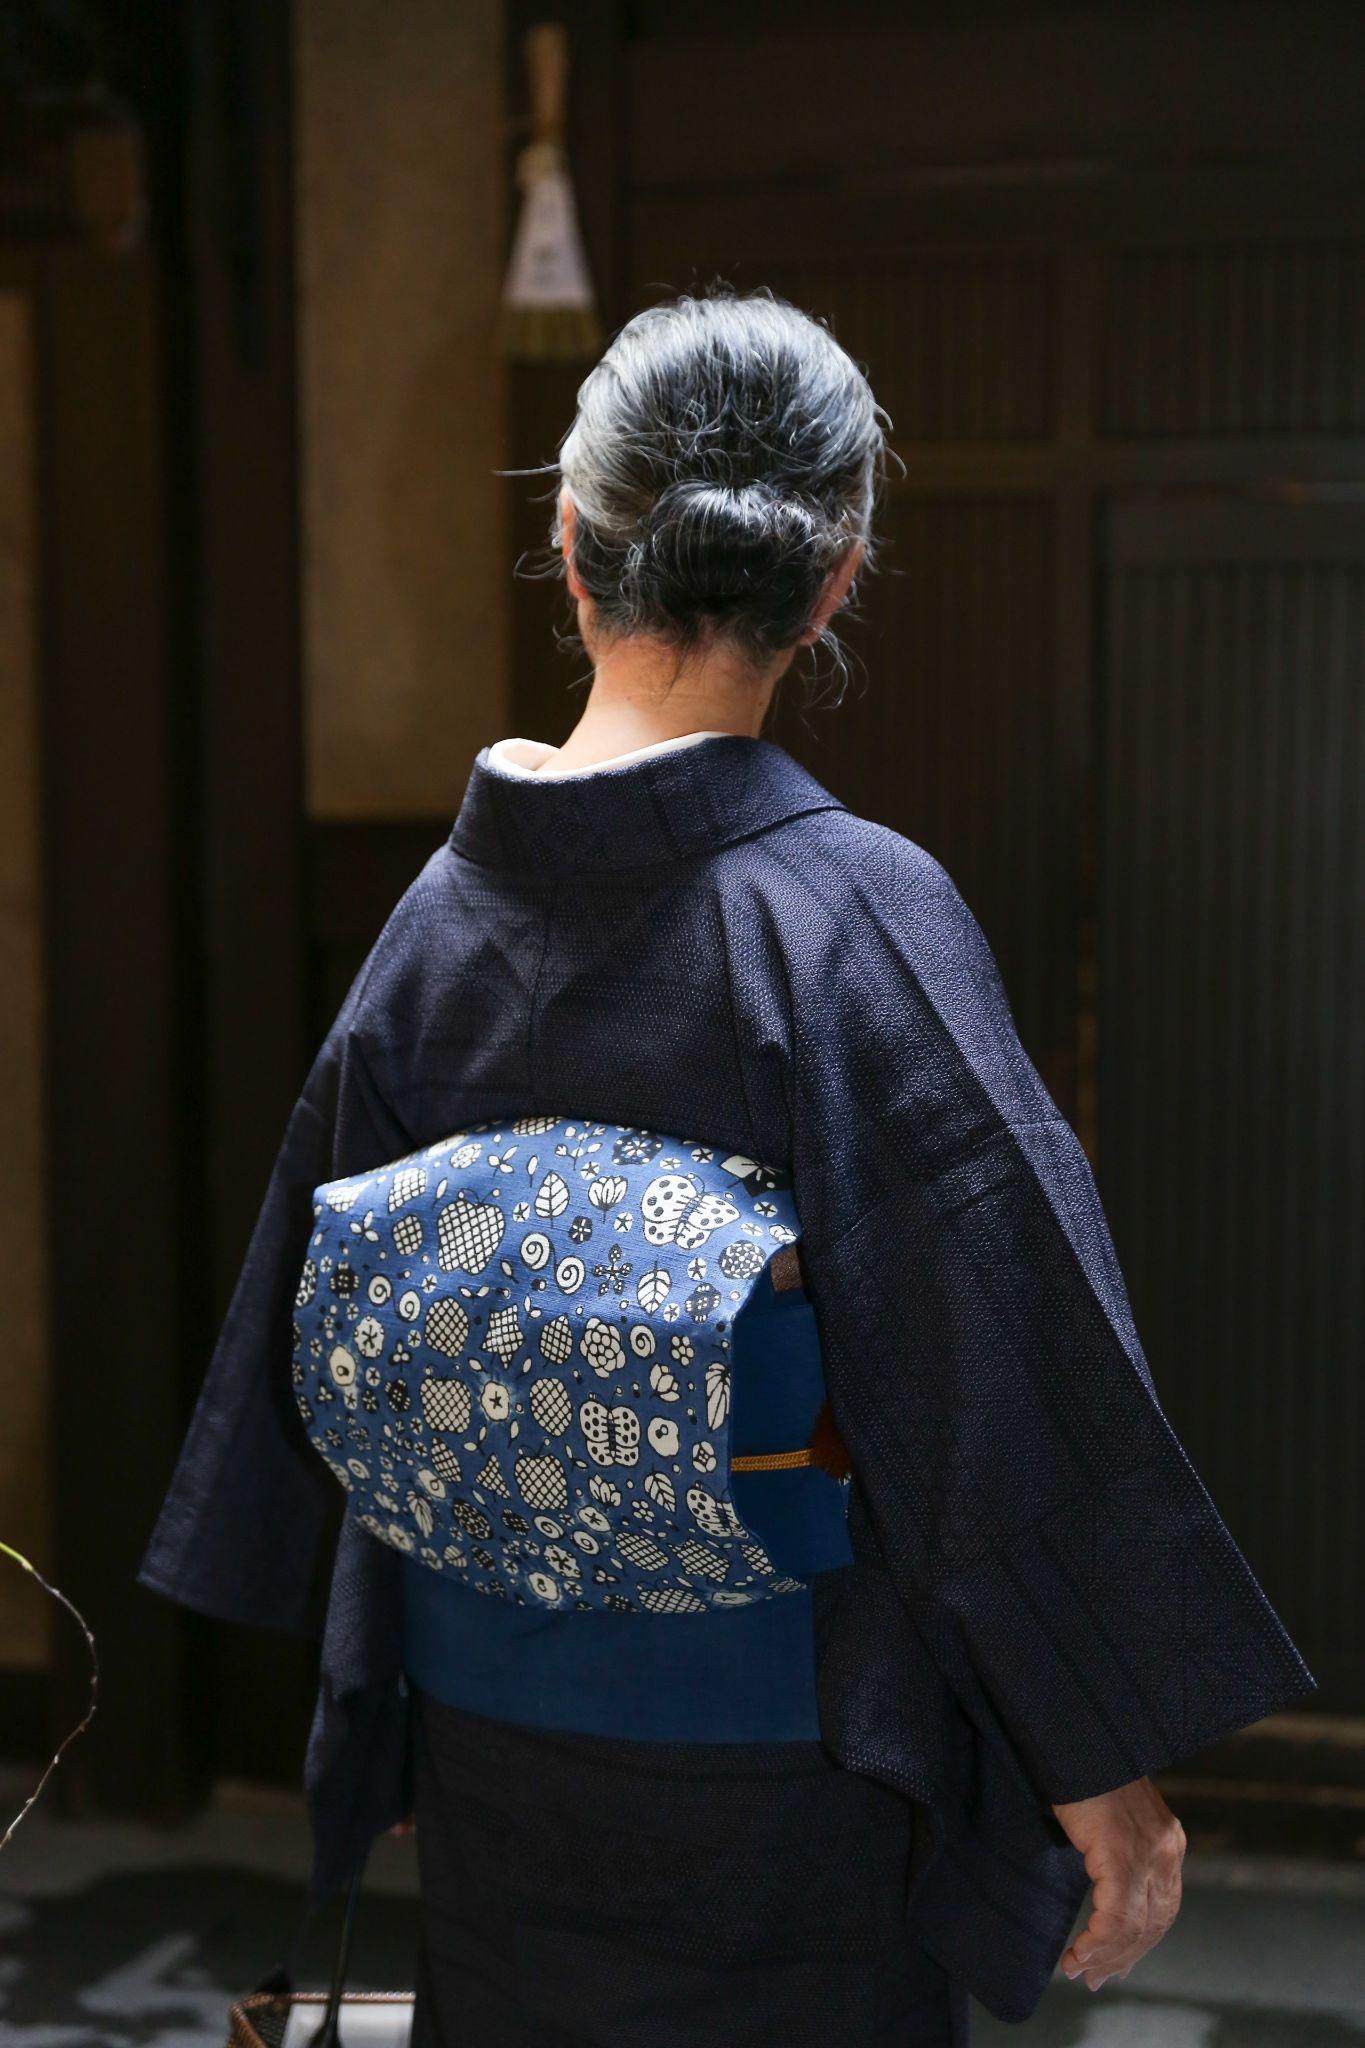 初めての訪問着を誂えに『工芸キモノ野口』へ 「京都できもの、きもの